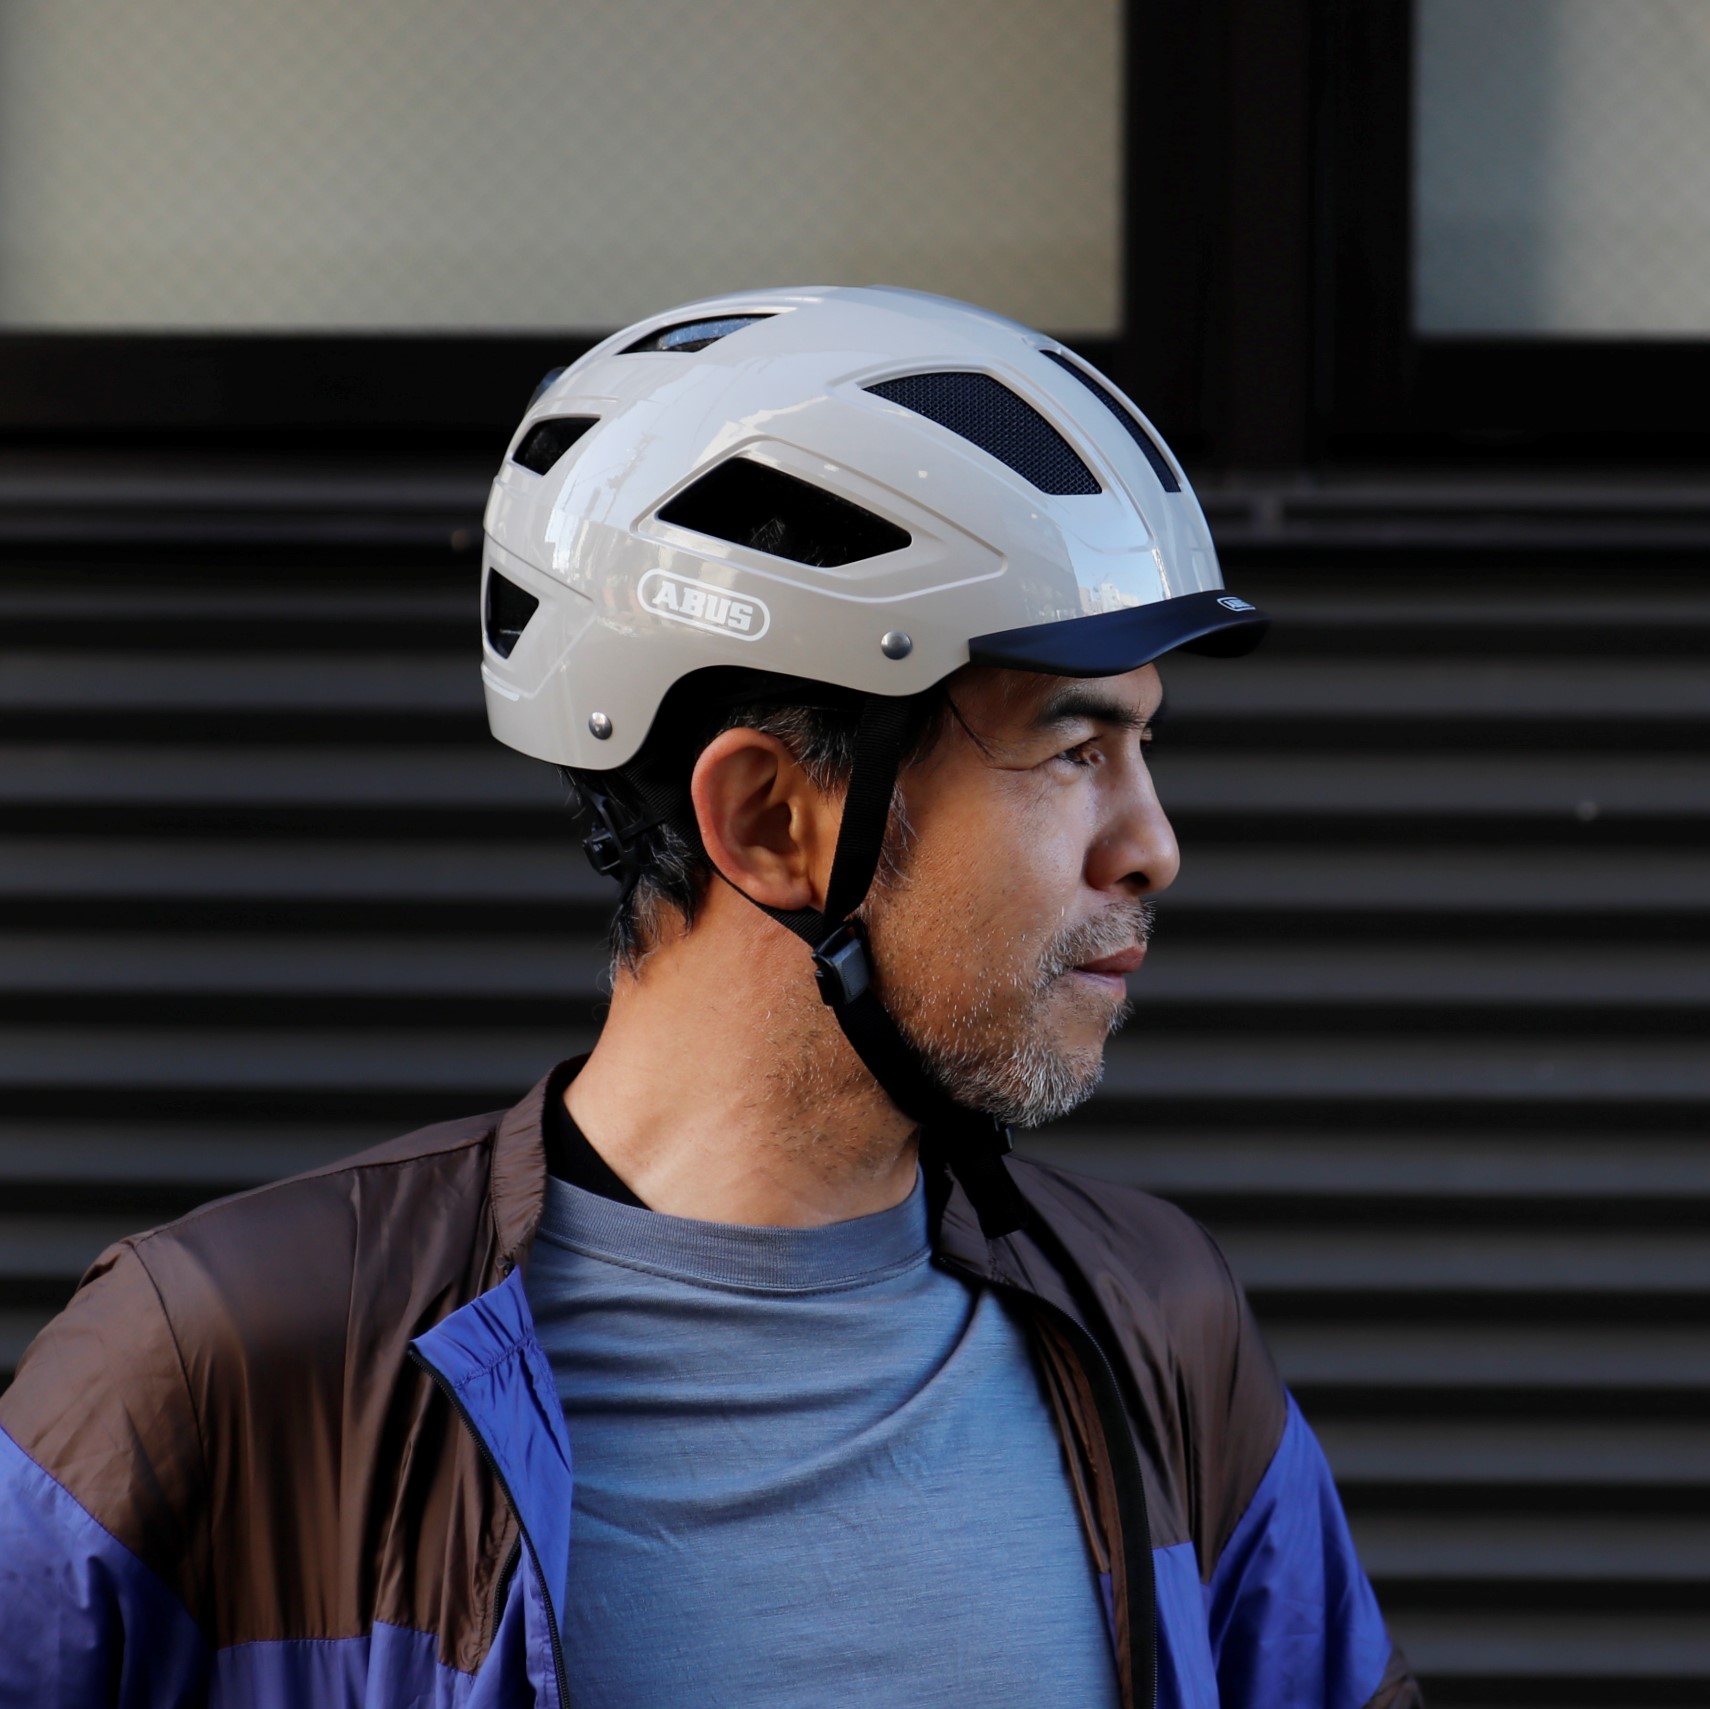 BLOG ～街乗りにオススメのヘルメット～ ゴテゴテとしないシンプルな